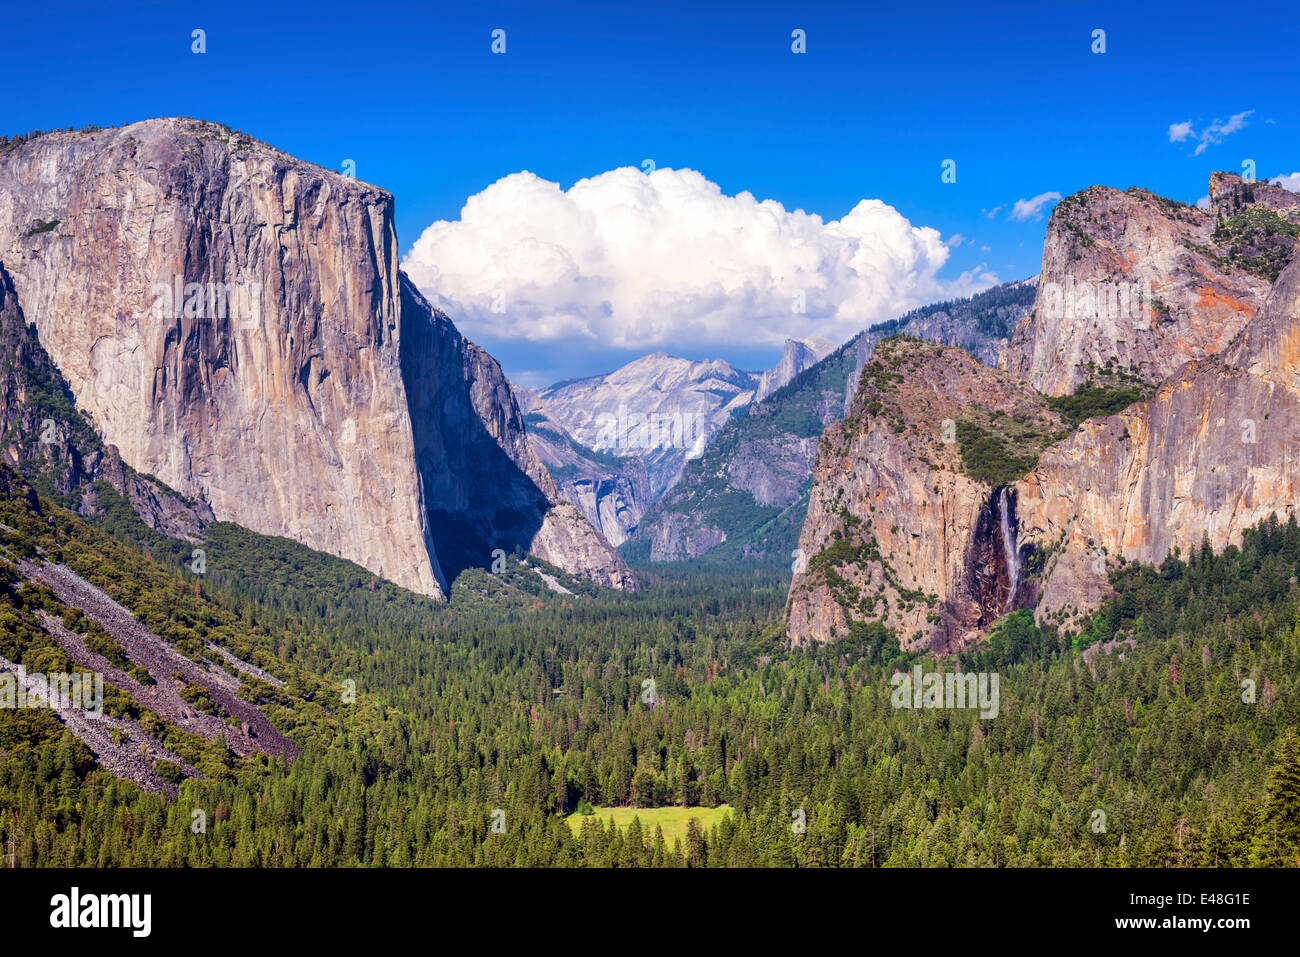 Valle de Yosemite visto desde el punto de los artistas. Parque Nacional Yosemite, California, Estados Unidos. Foto de stock